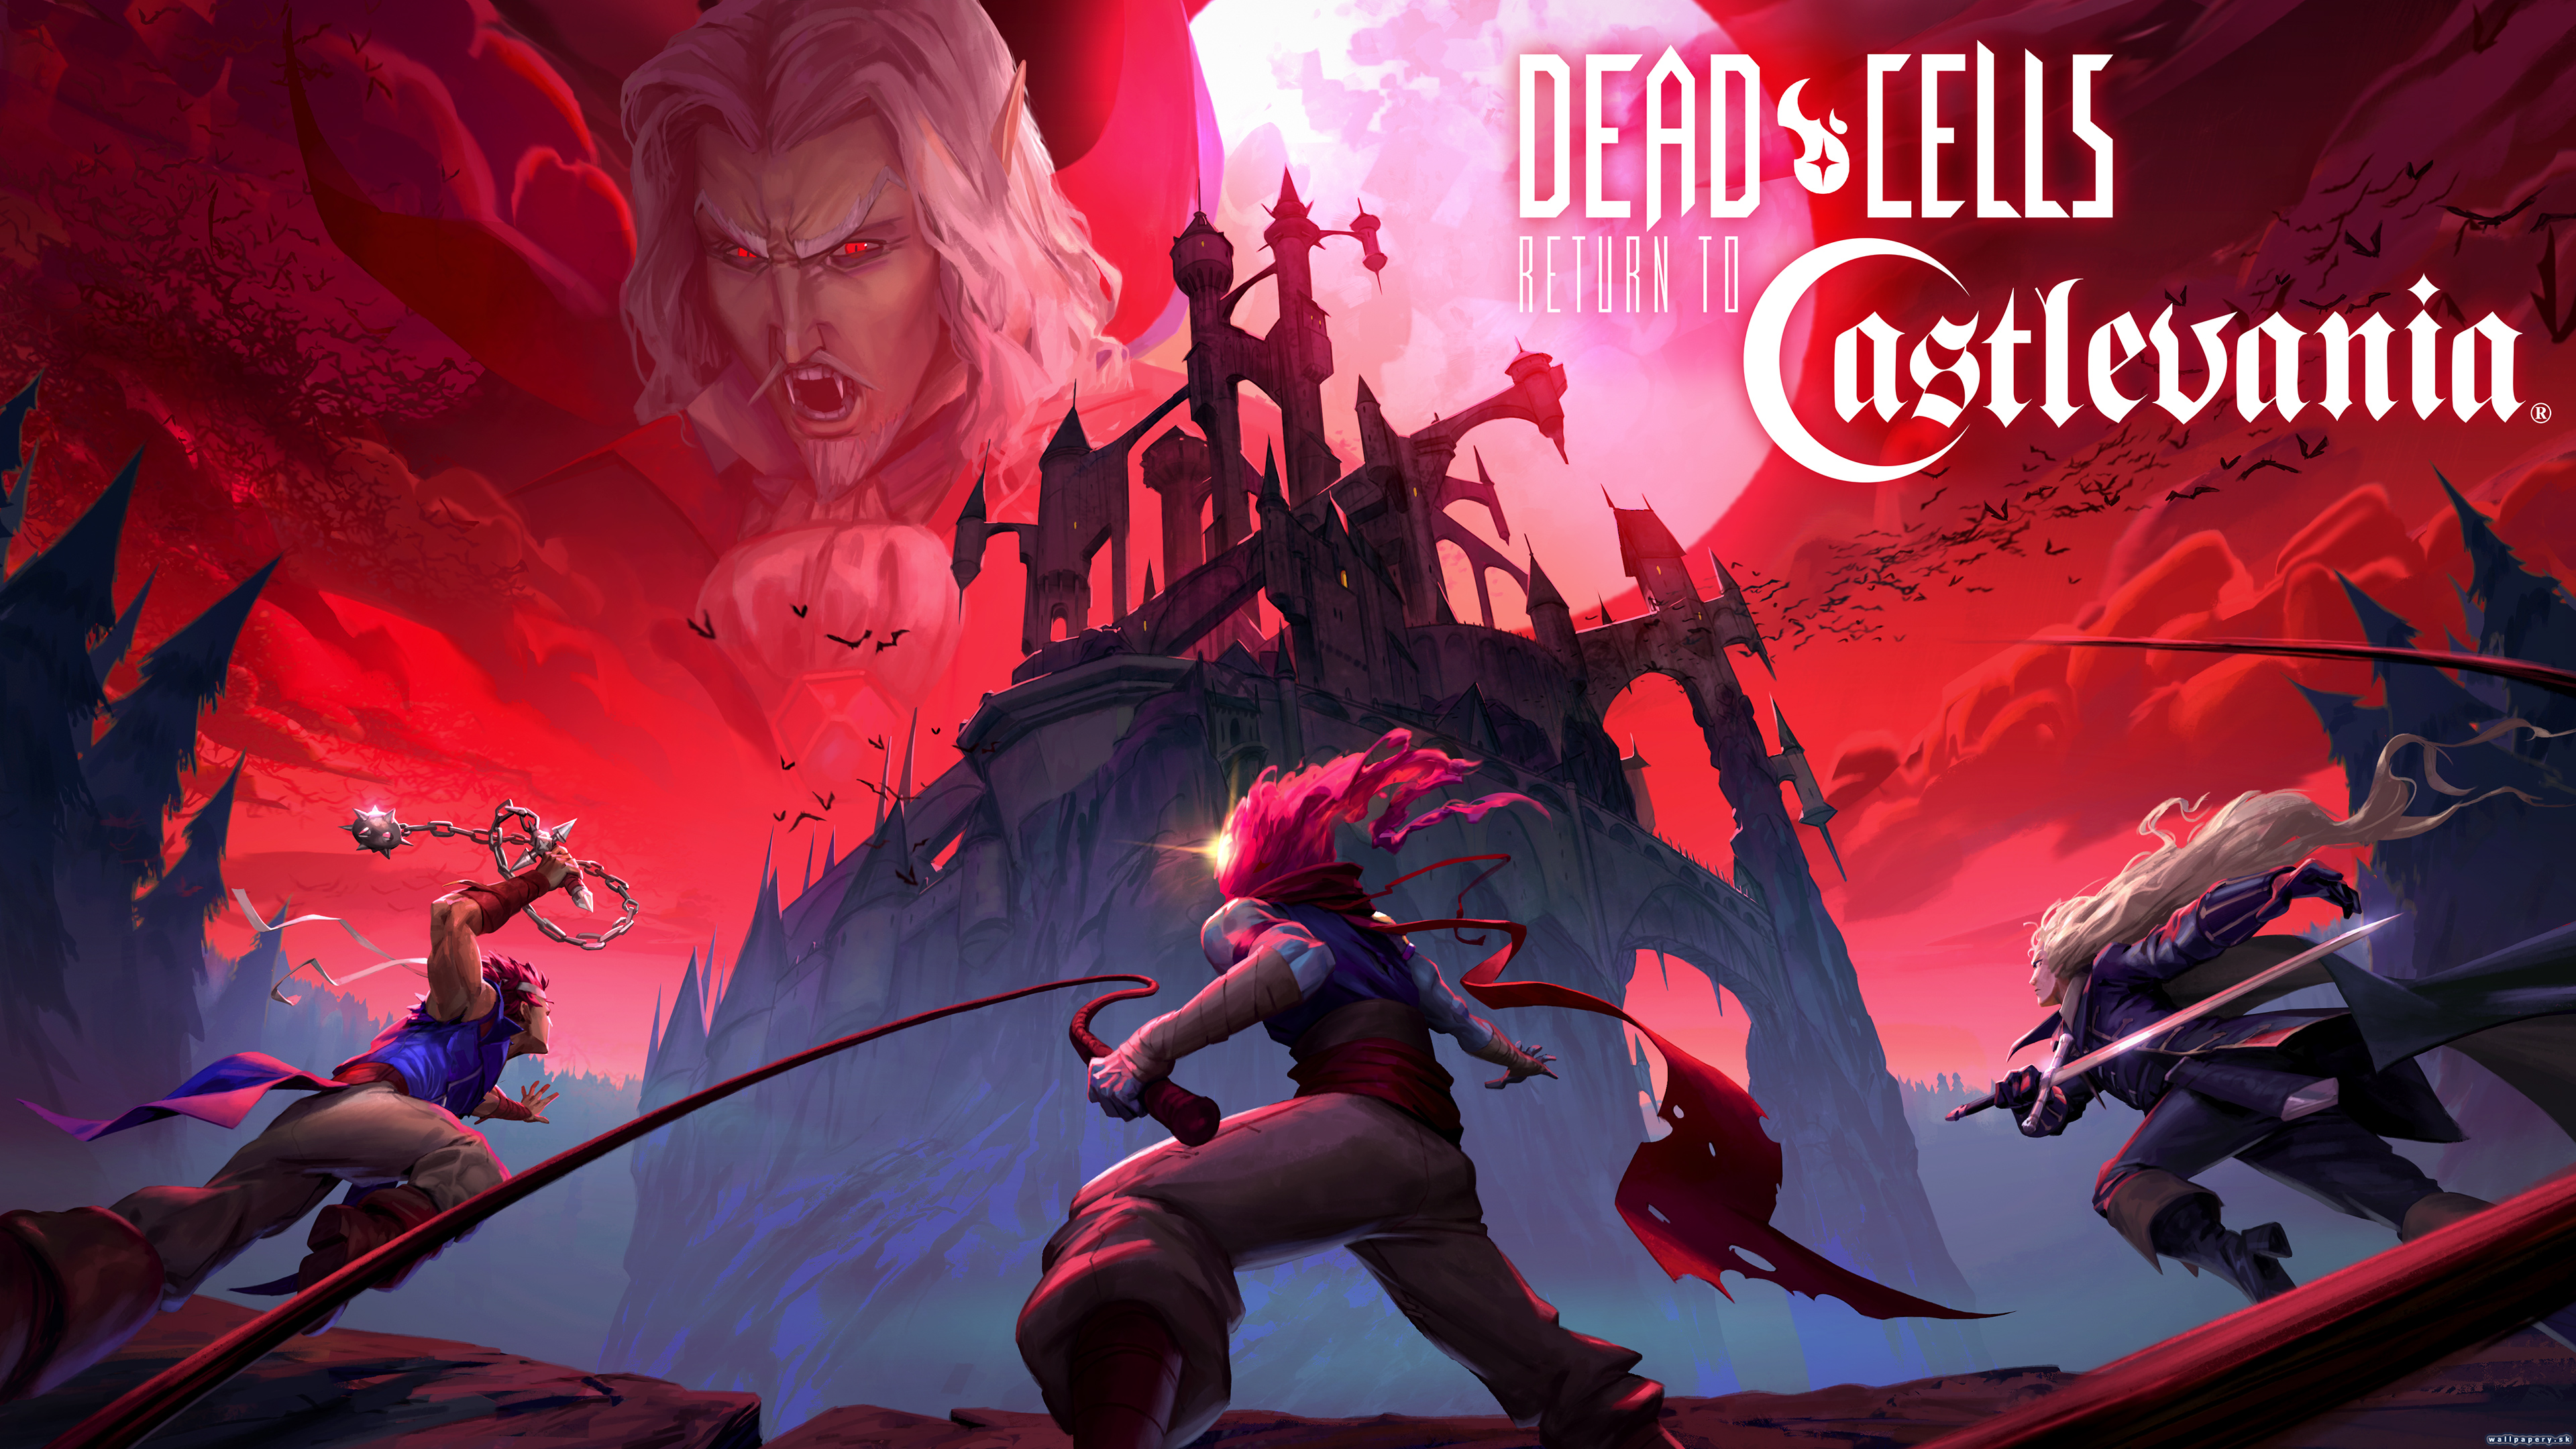 Dead Cells: Return to Castlevania - wallpaper 1